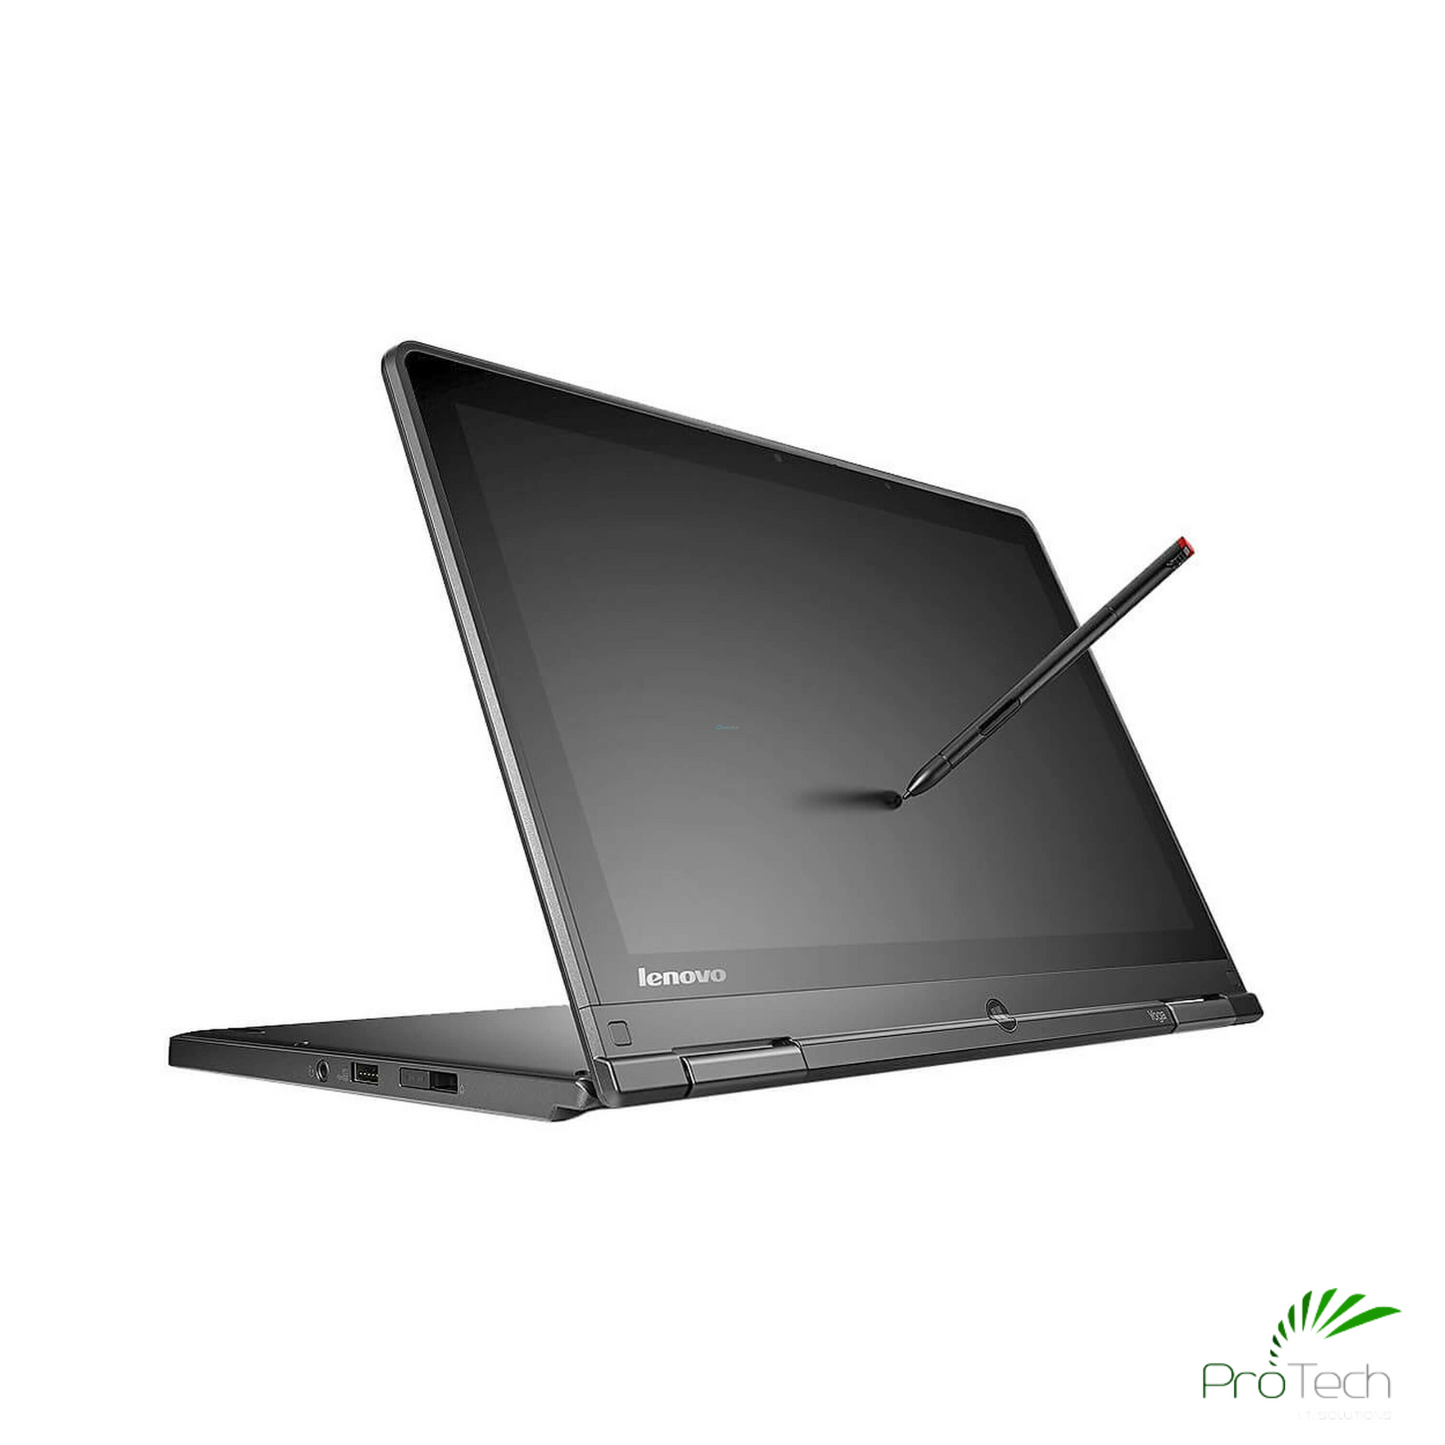 Lenovo ThinkPad S1 Yoga | Core i5 | 8GB RAM | 256GB SSD